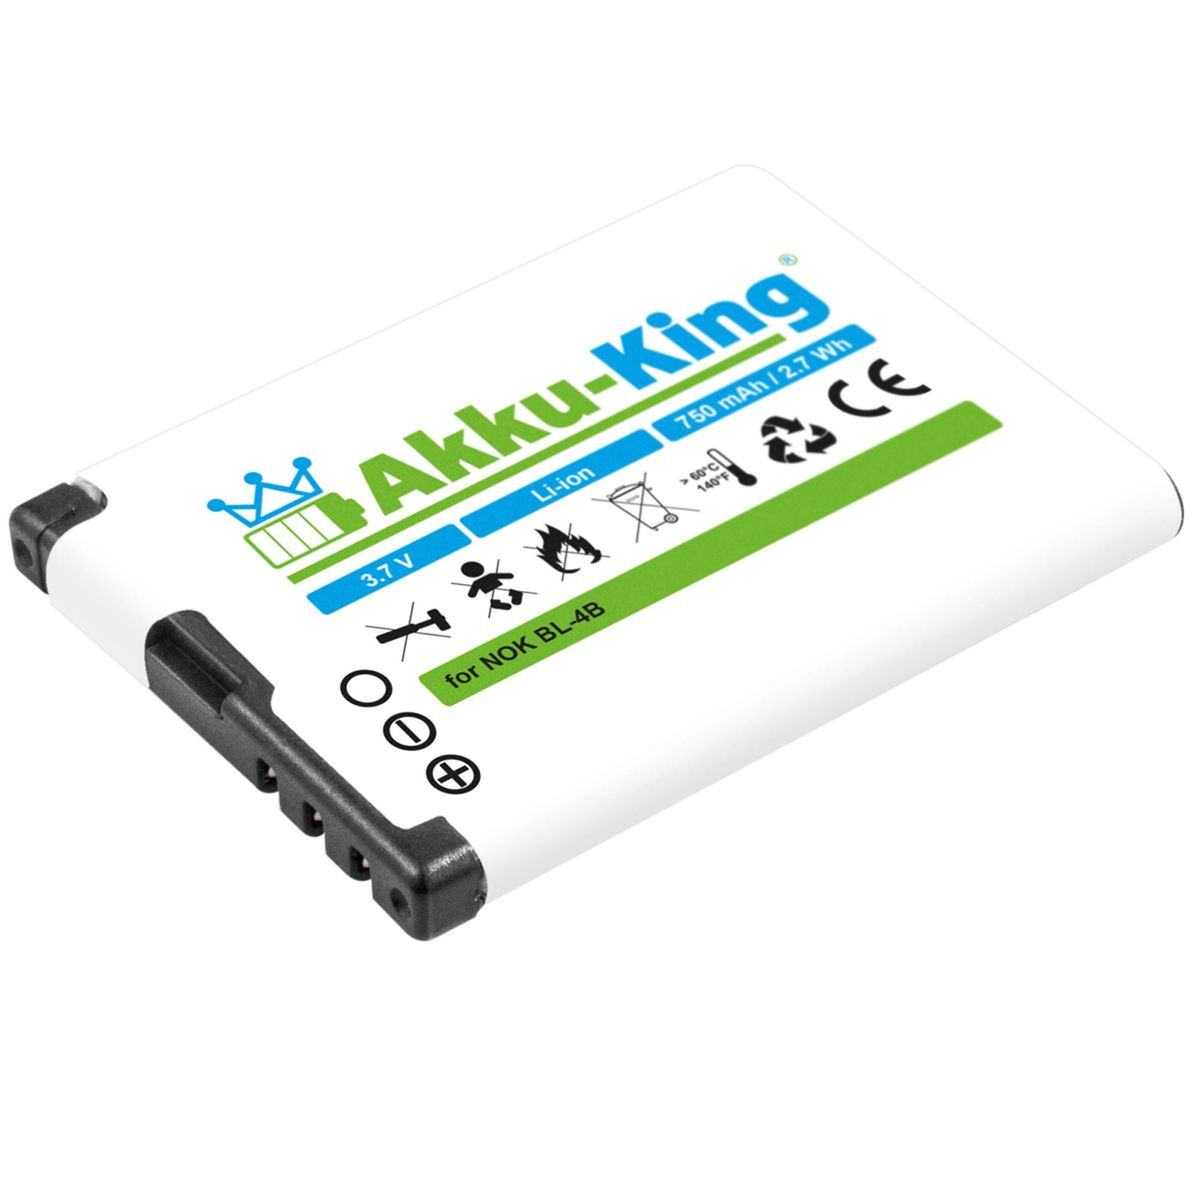 AKKU-KING Akku kompatibel mit Li-Ion Volt, Handy-Akku, 850mAh 3.7 BL-4B Nokia